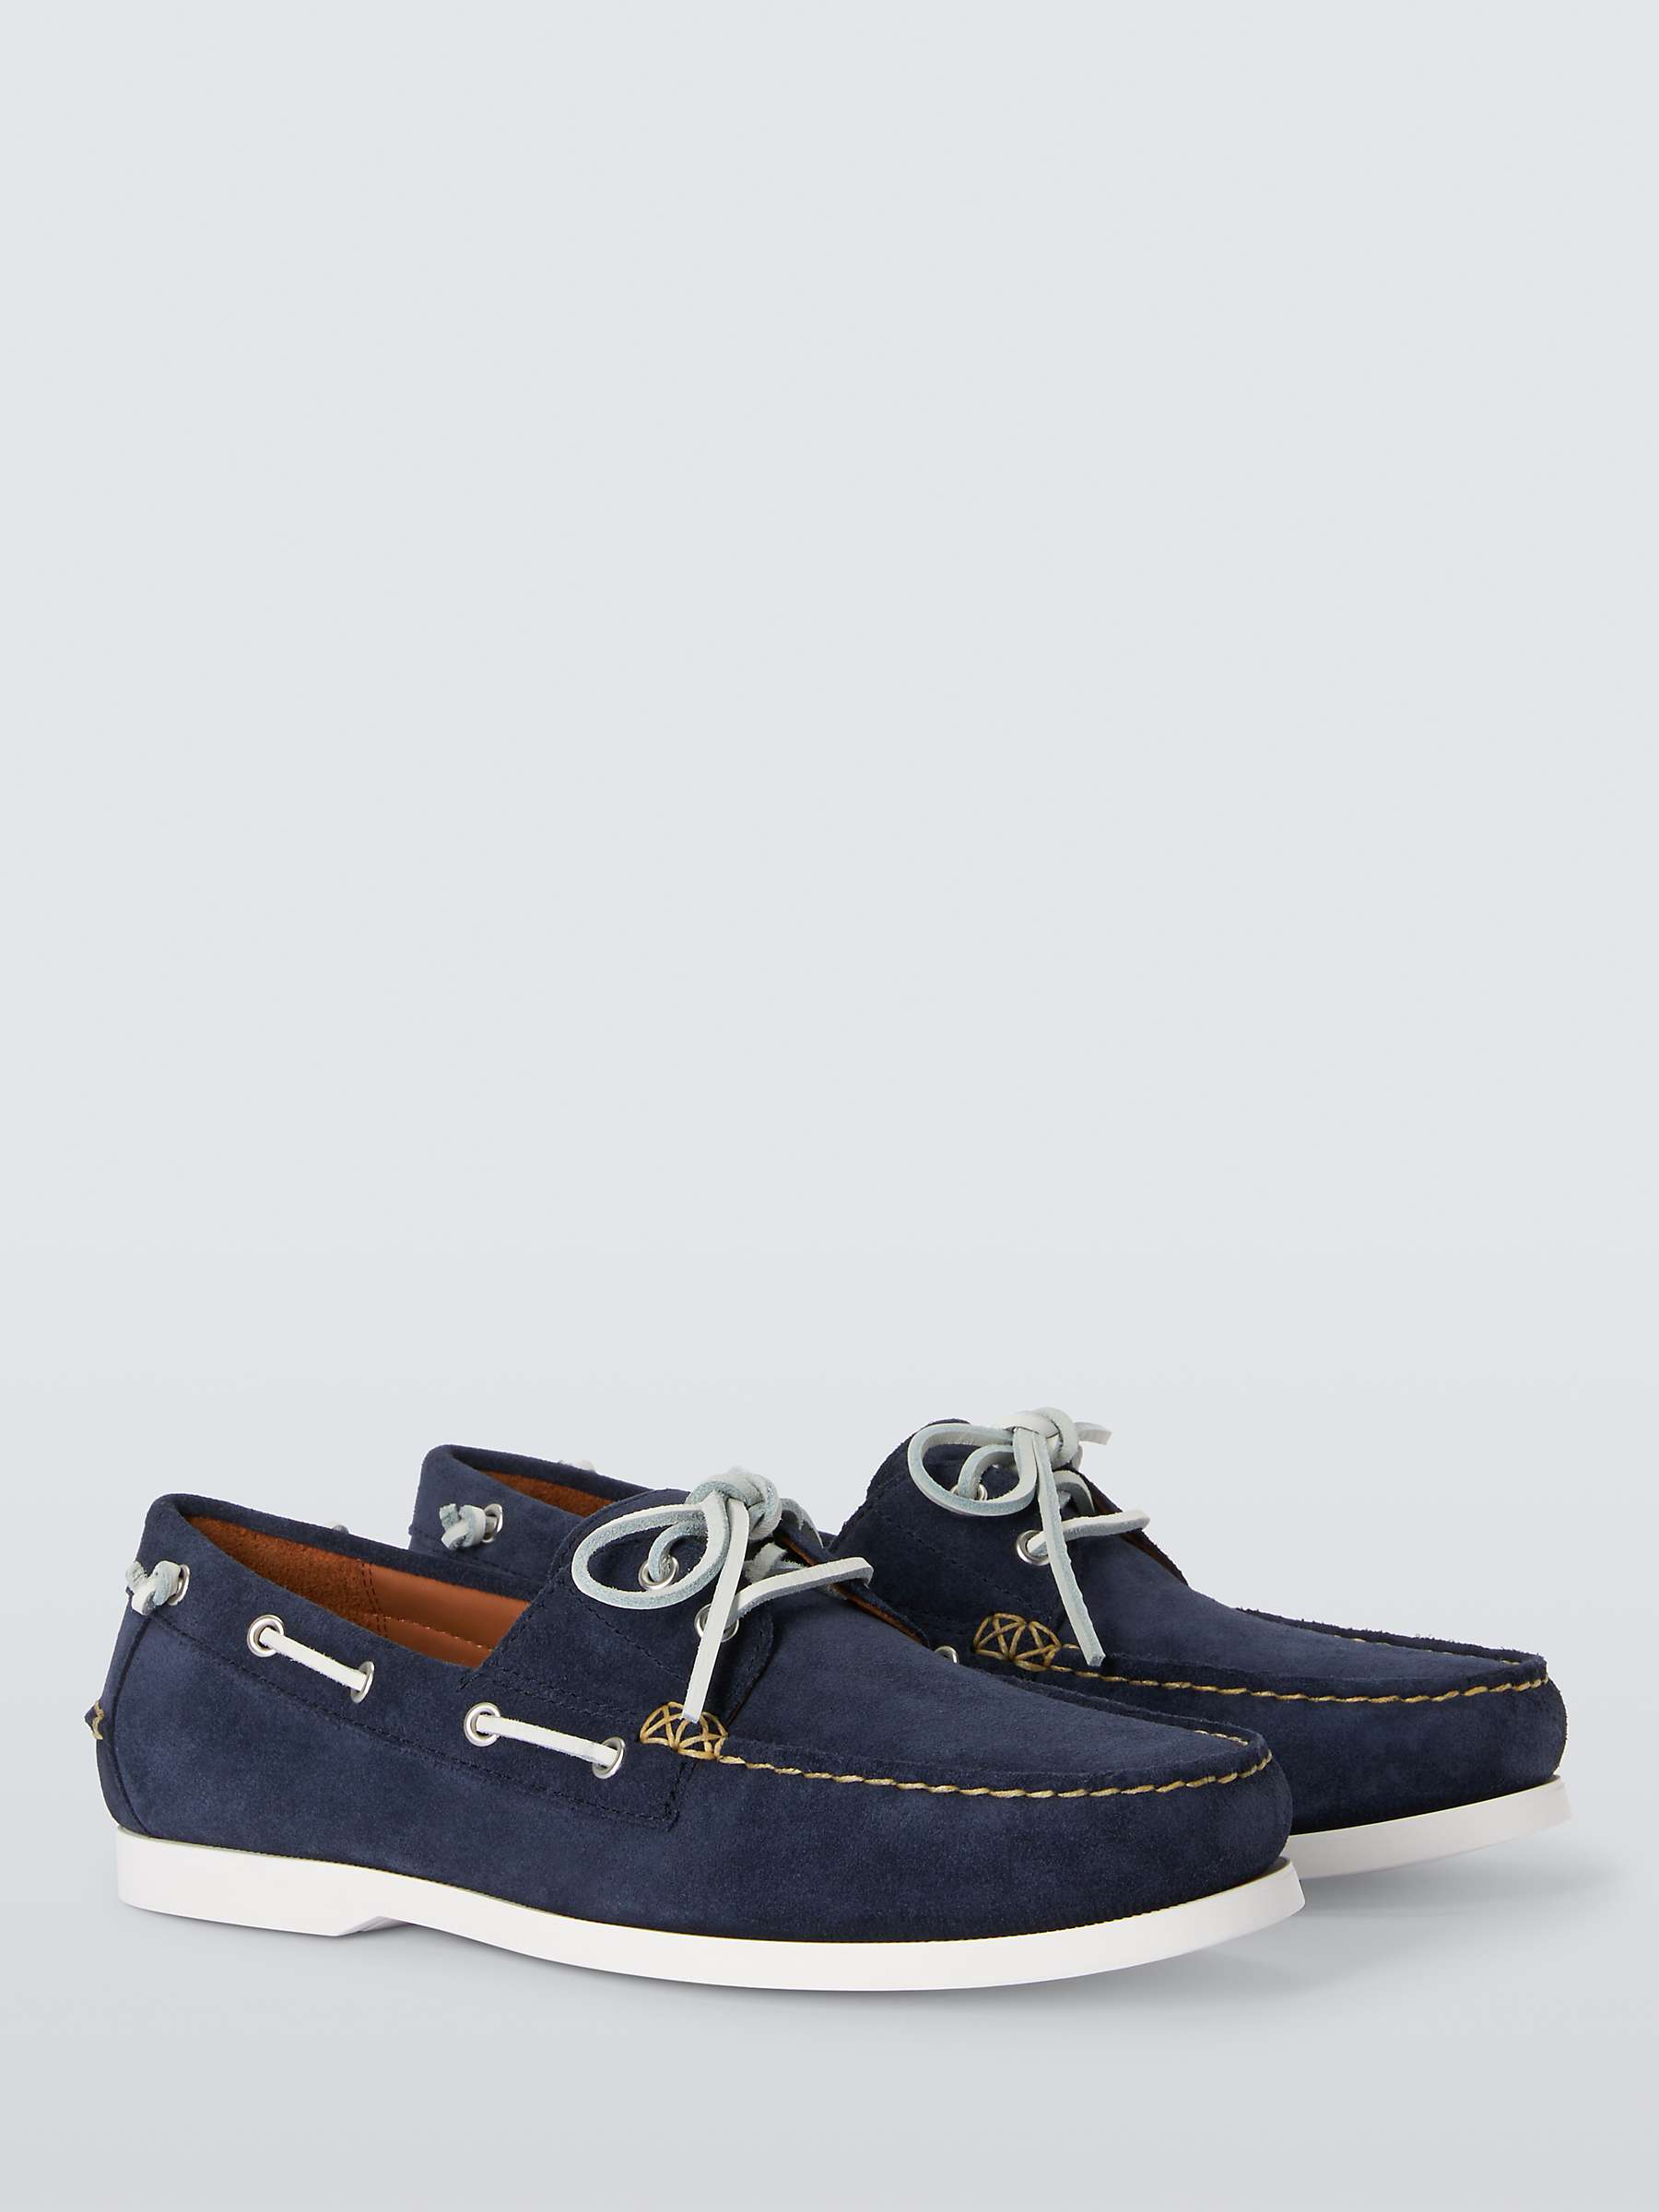 Buy Ralph Lauren Merton Hunter Suede Boat Shoes, Navy Online at johnlewis.com